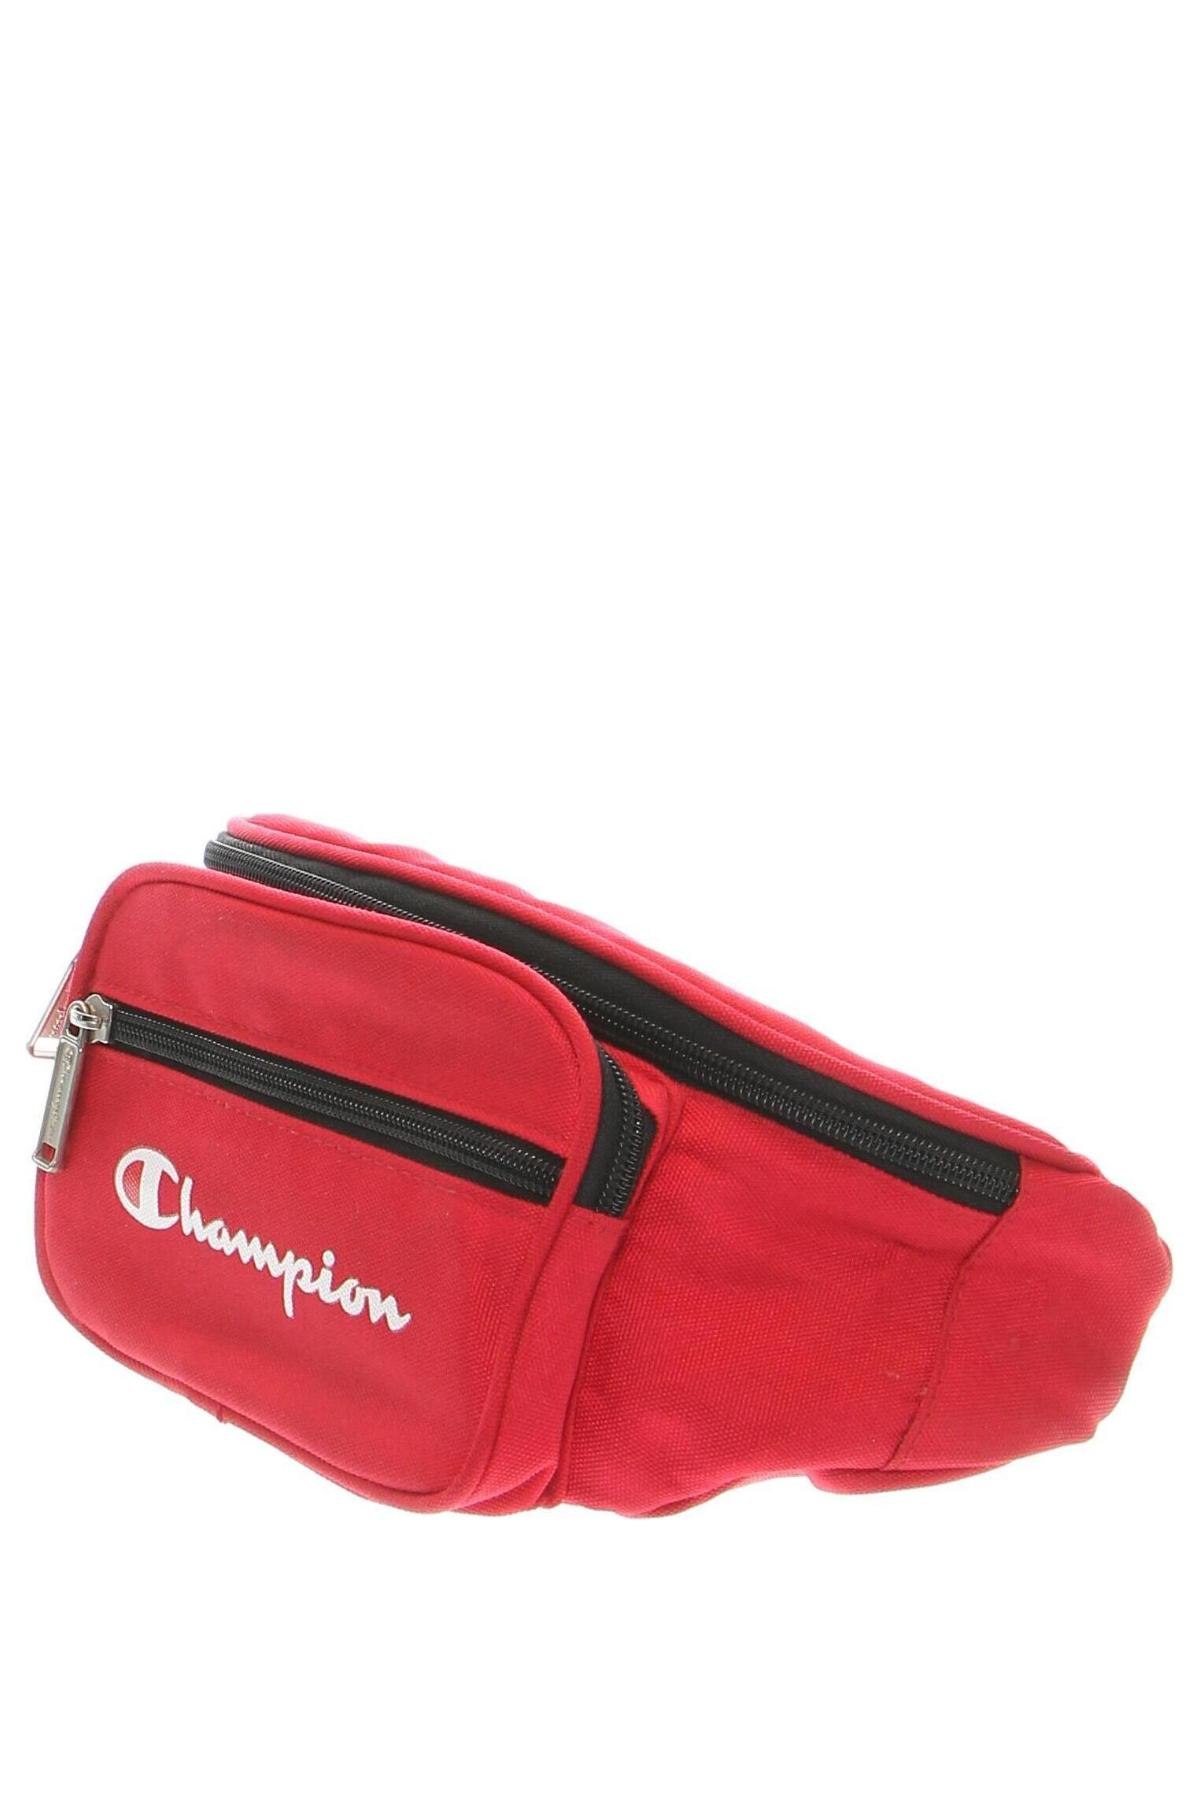 Τσάντα Champion, Χρώμα Κόκκινο, Τιμή 25,00 €